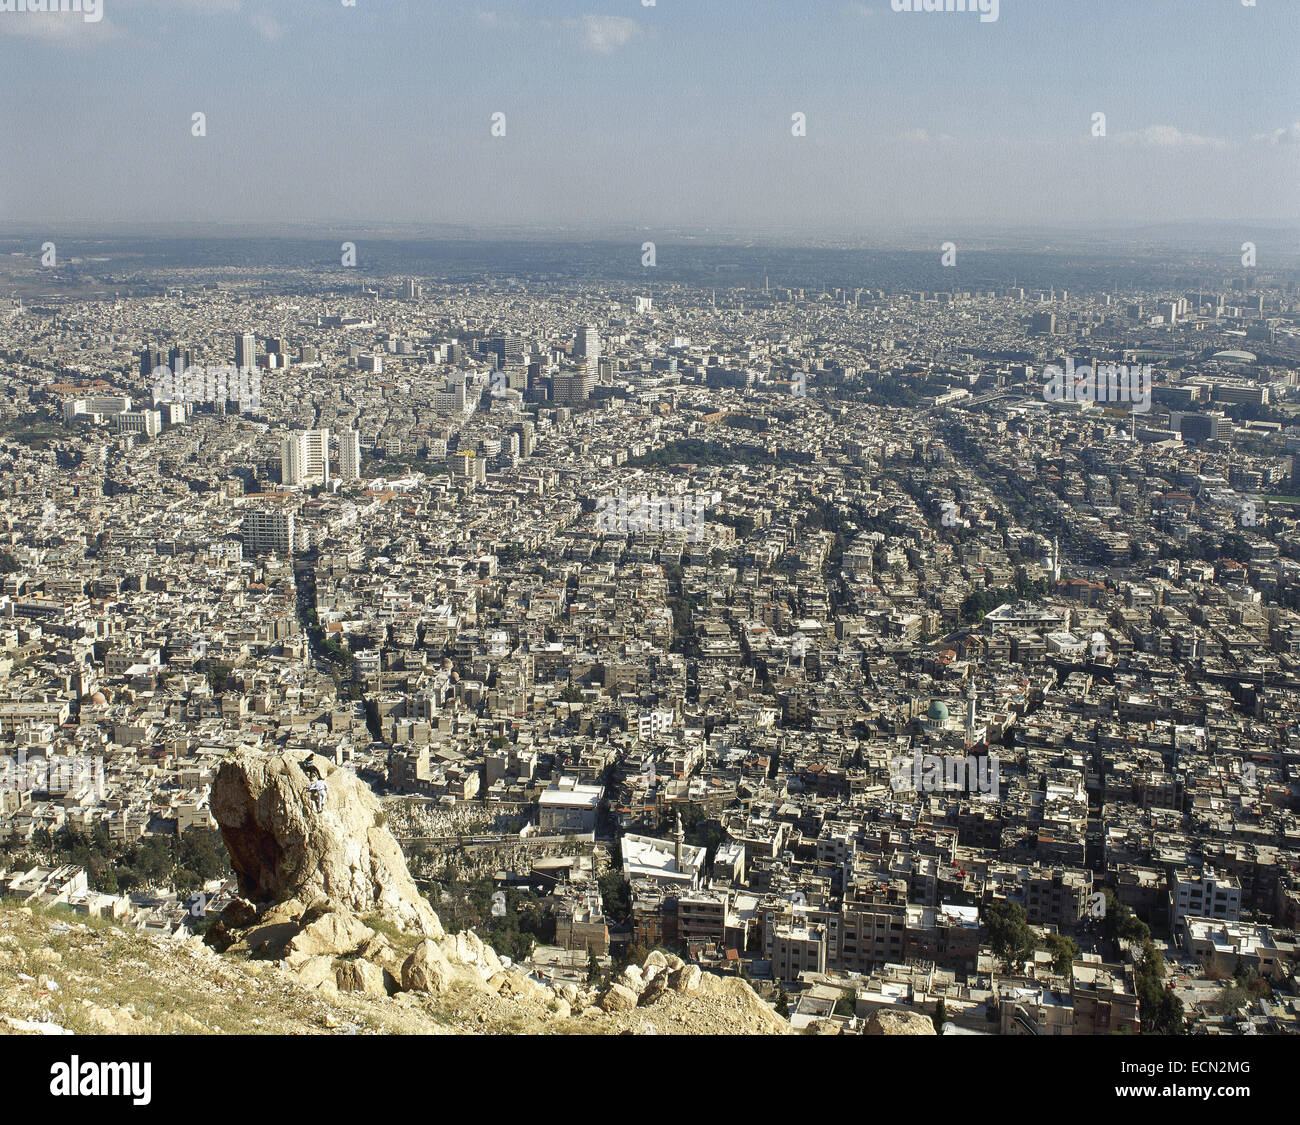 La Syrie. Damas. Aperçu de la ville. Proche Orient. Photo avant la guerre civile syrienne. Banque D'Images